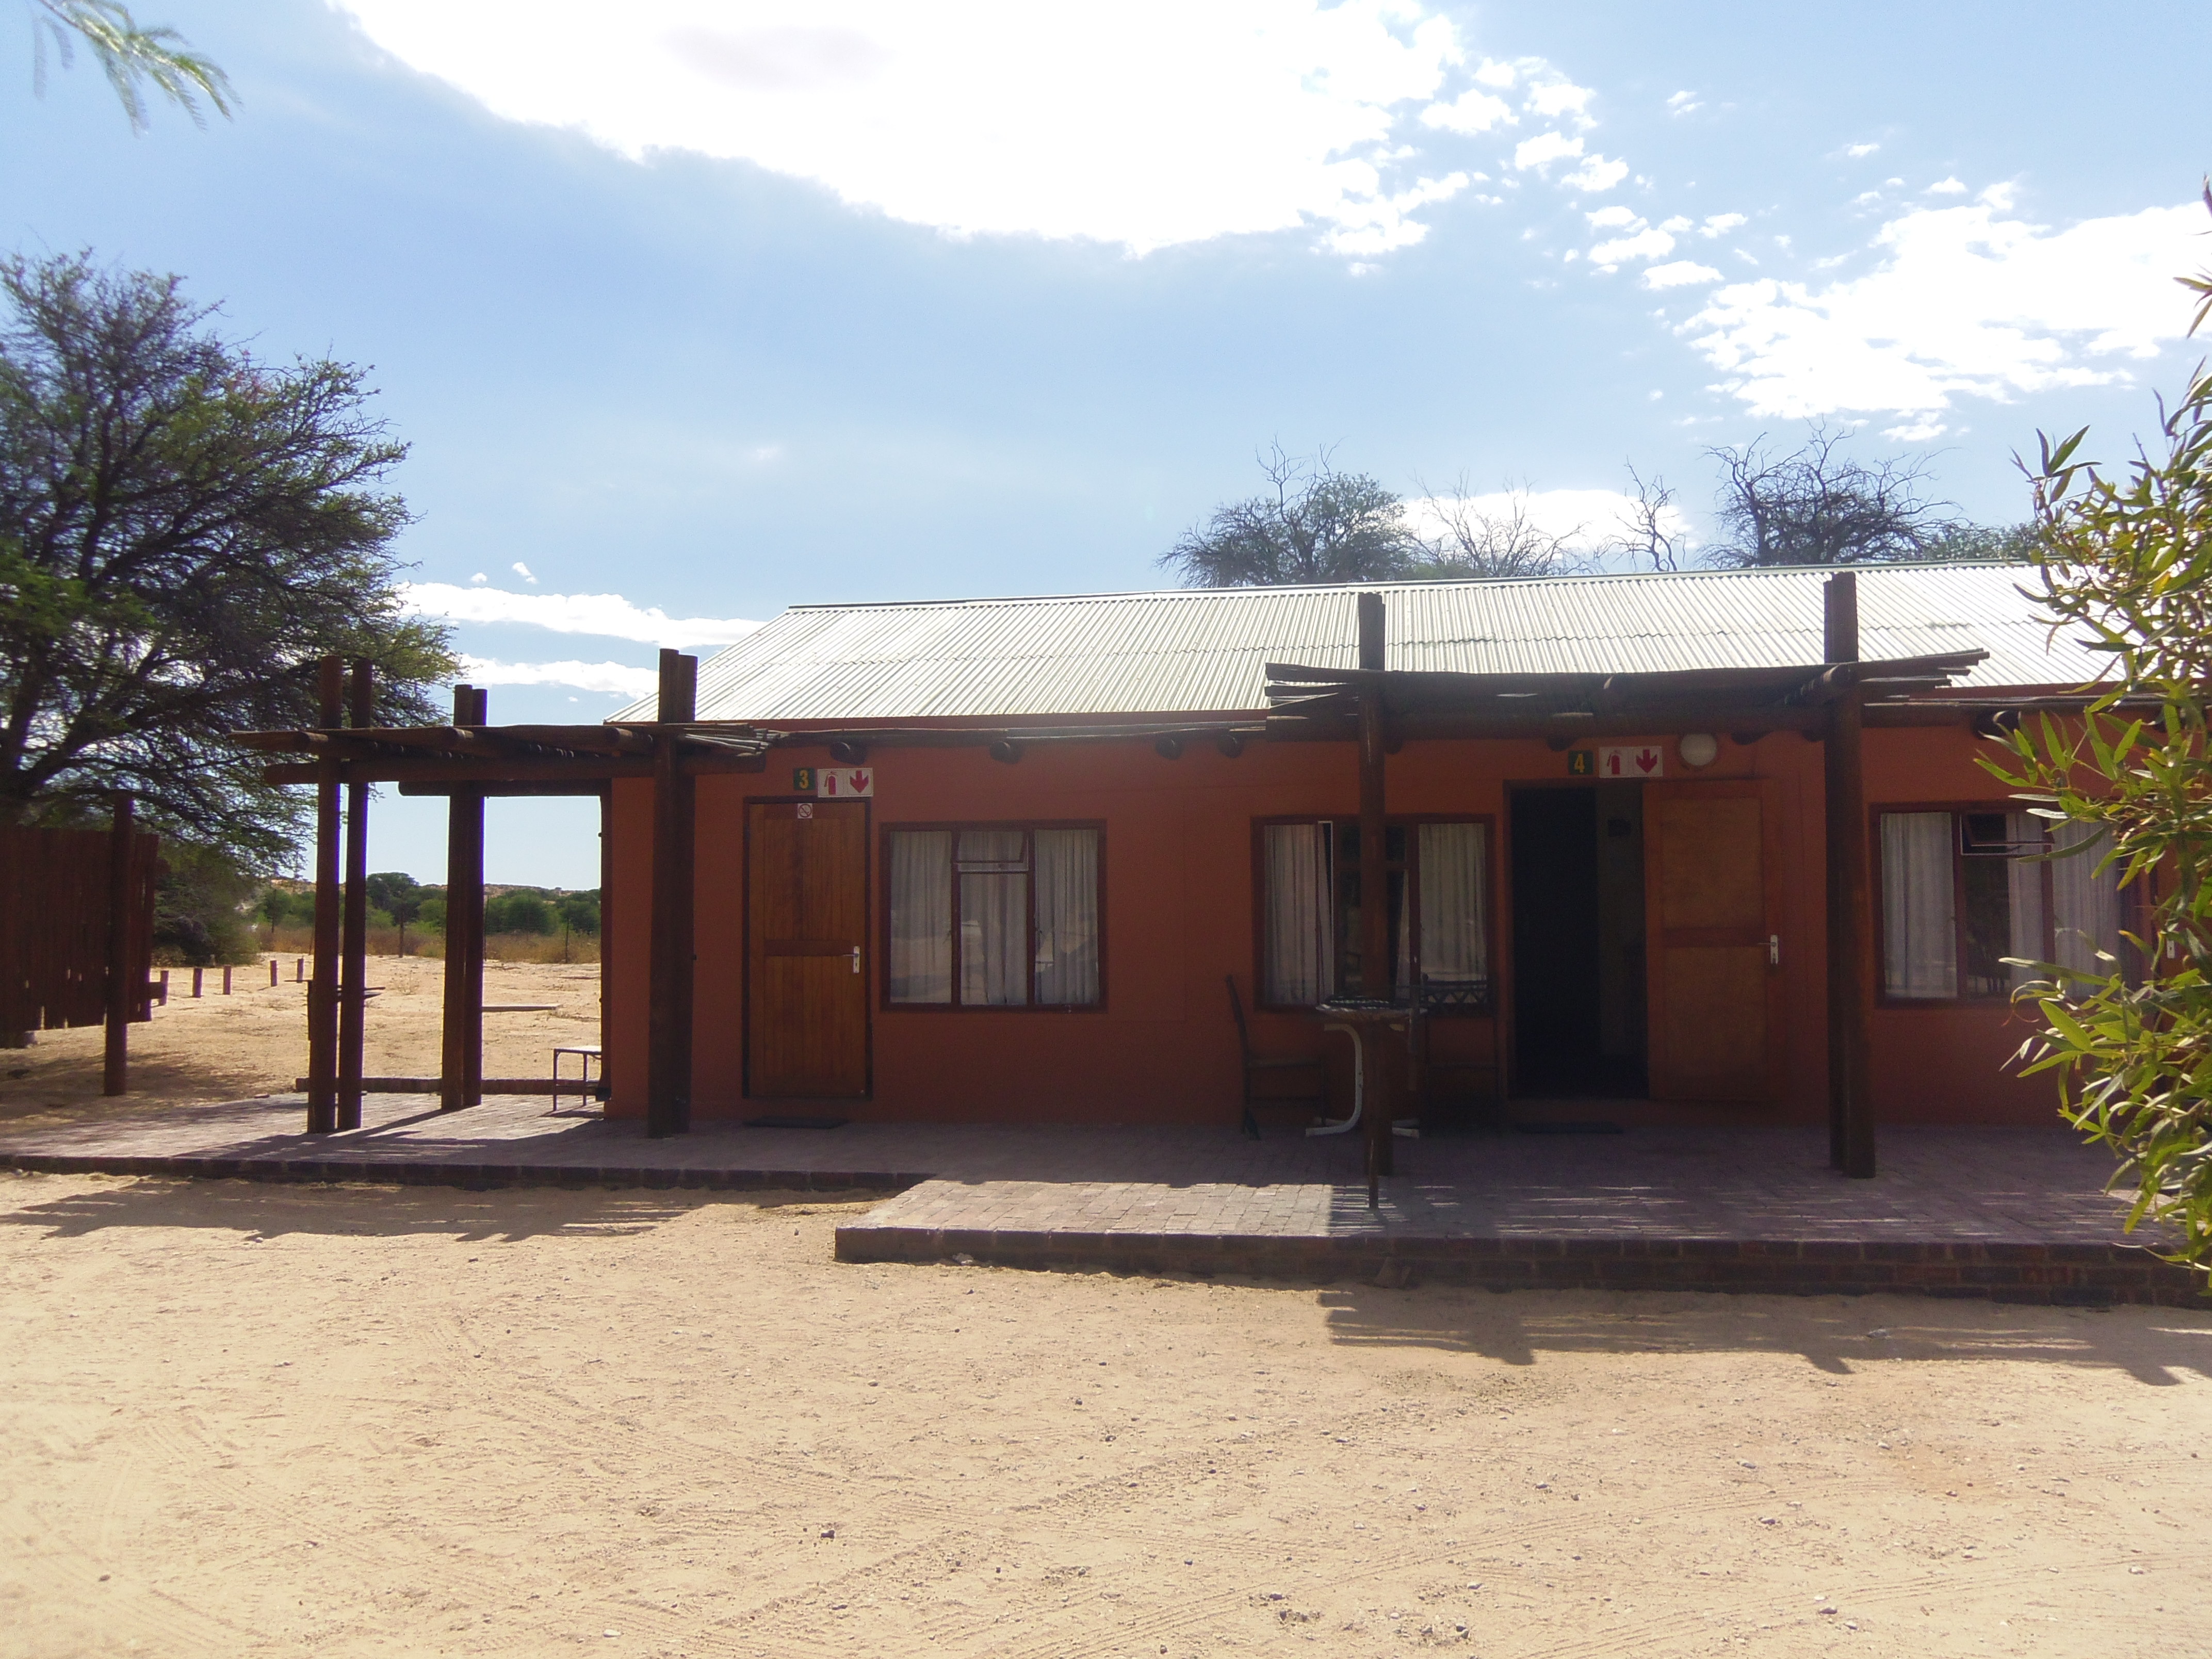 My camp in the Kalahari